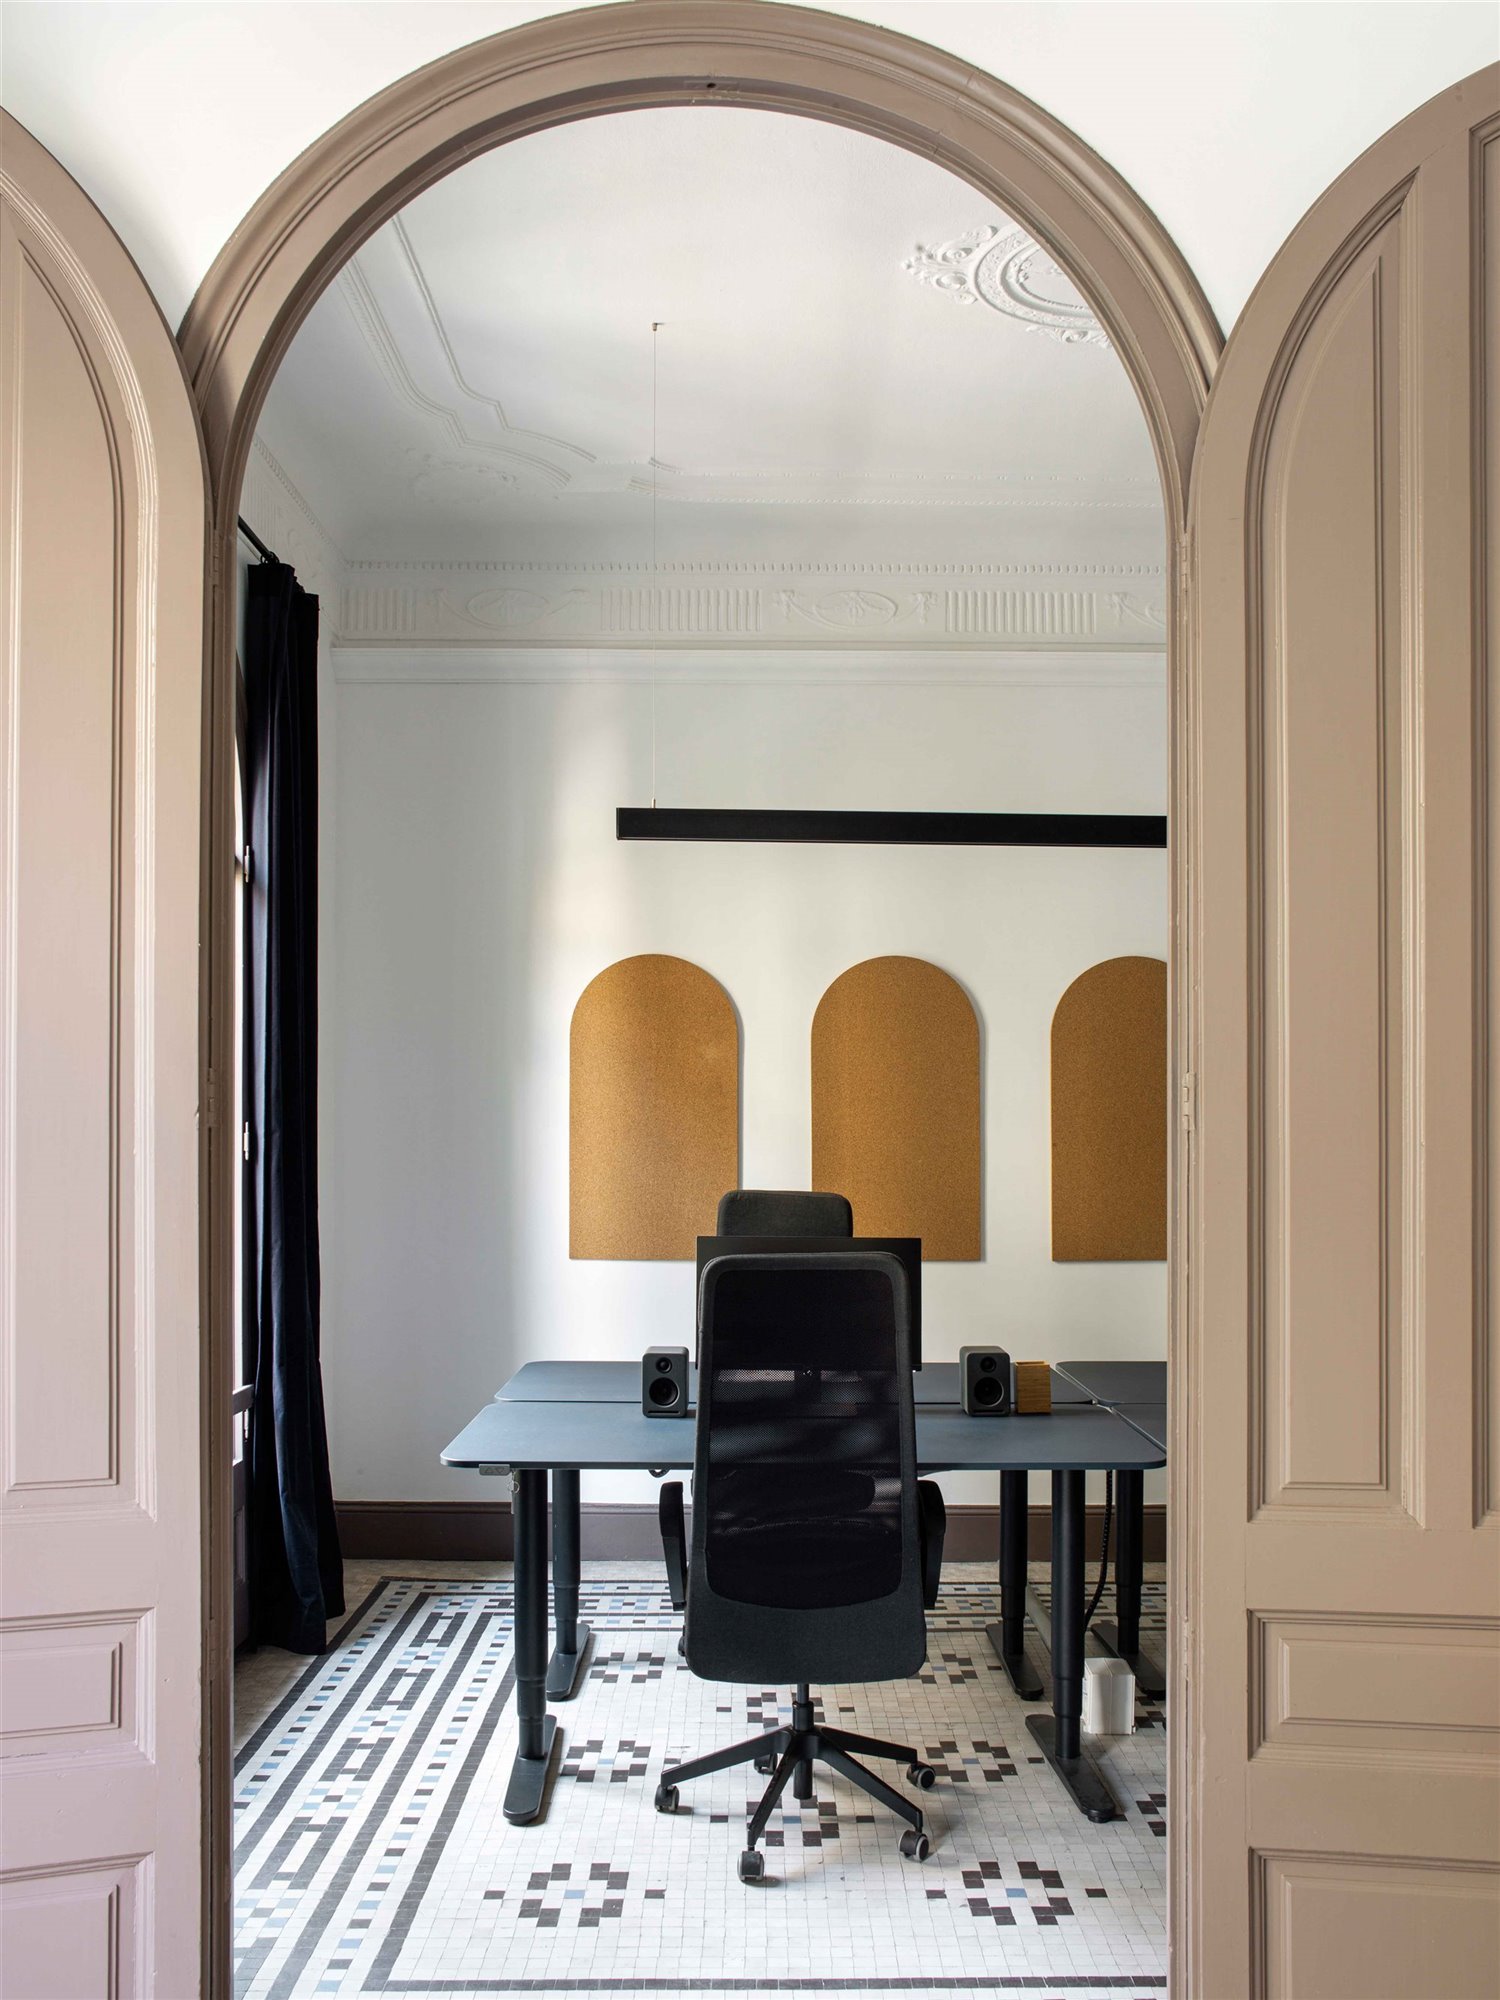 Una oficina de estilo Neo Art Deco en Barcelona en la que nos gustaría vivir 